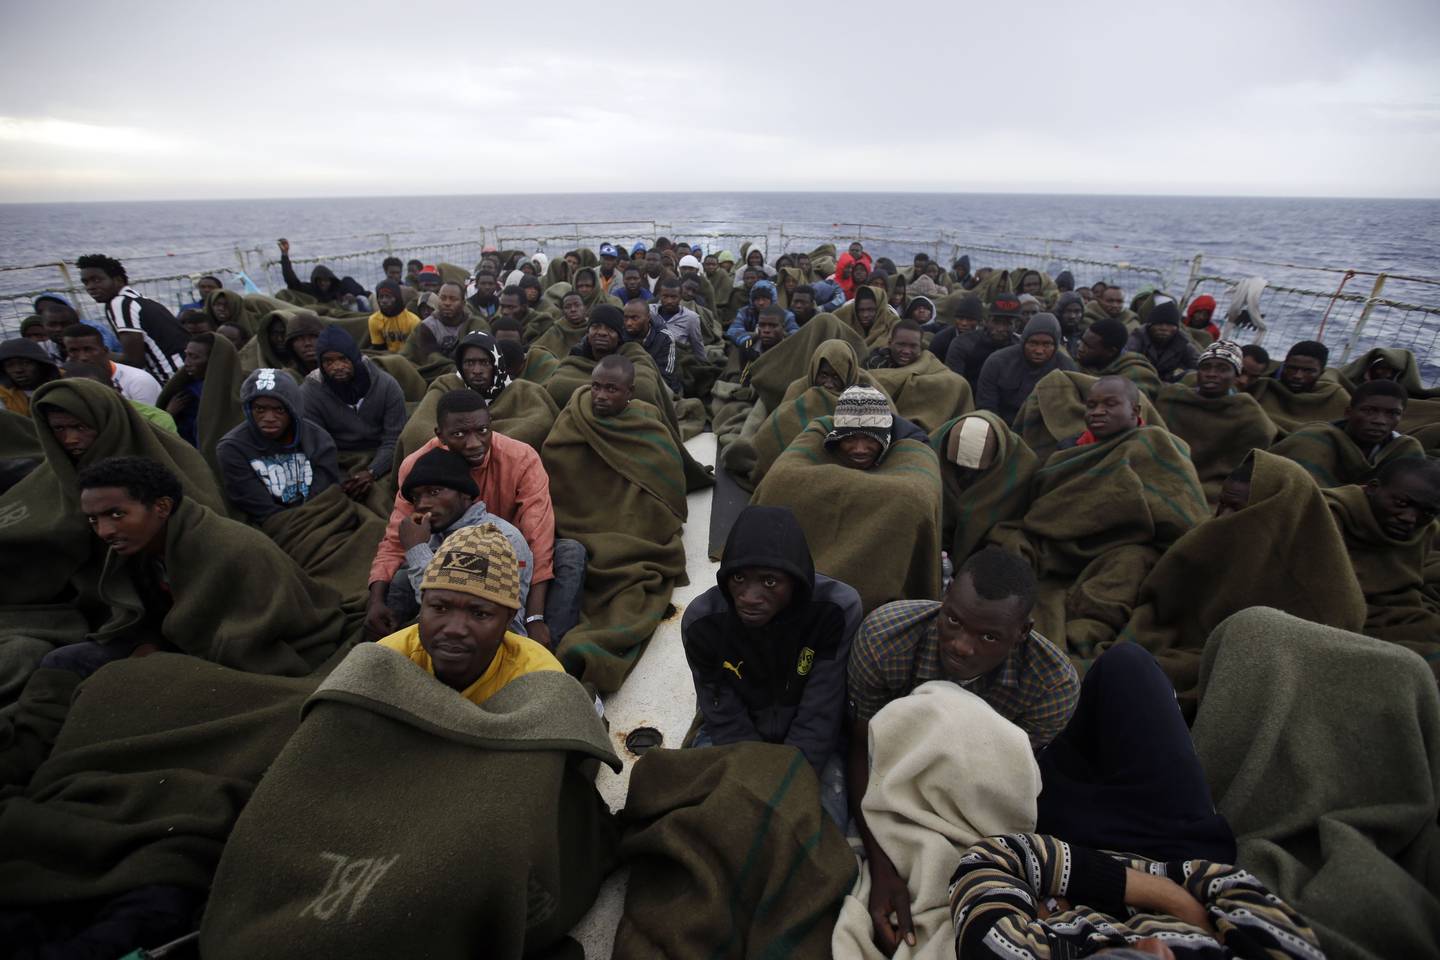 EU har for første gang greid å enes om en helhetlig asylpolitikk. Kritikere på venstresiden mener den undergraver asylretten, kritikere på høyresiden vil ha strengere asylpolitikk. Foto: AP / NTB 